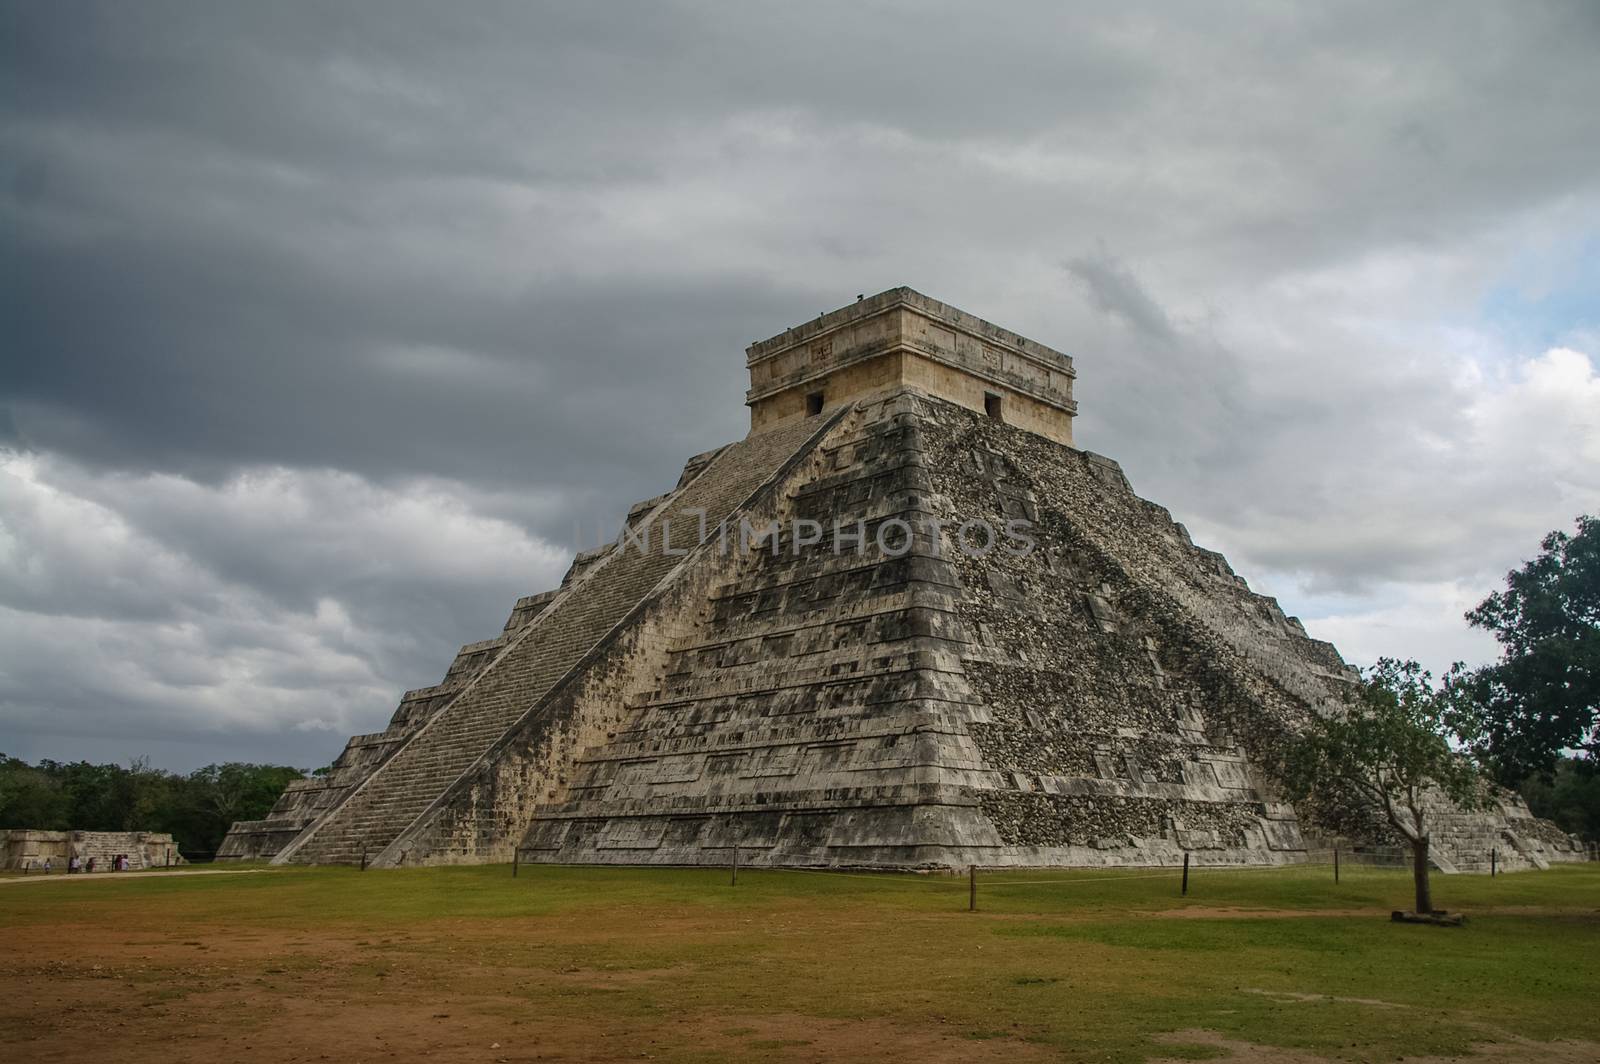 Mayan Pyramid of Kukulkan "El Castillo", Chichen Itza, Mexico.